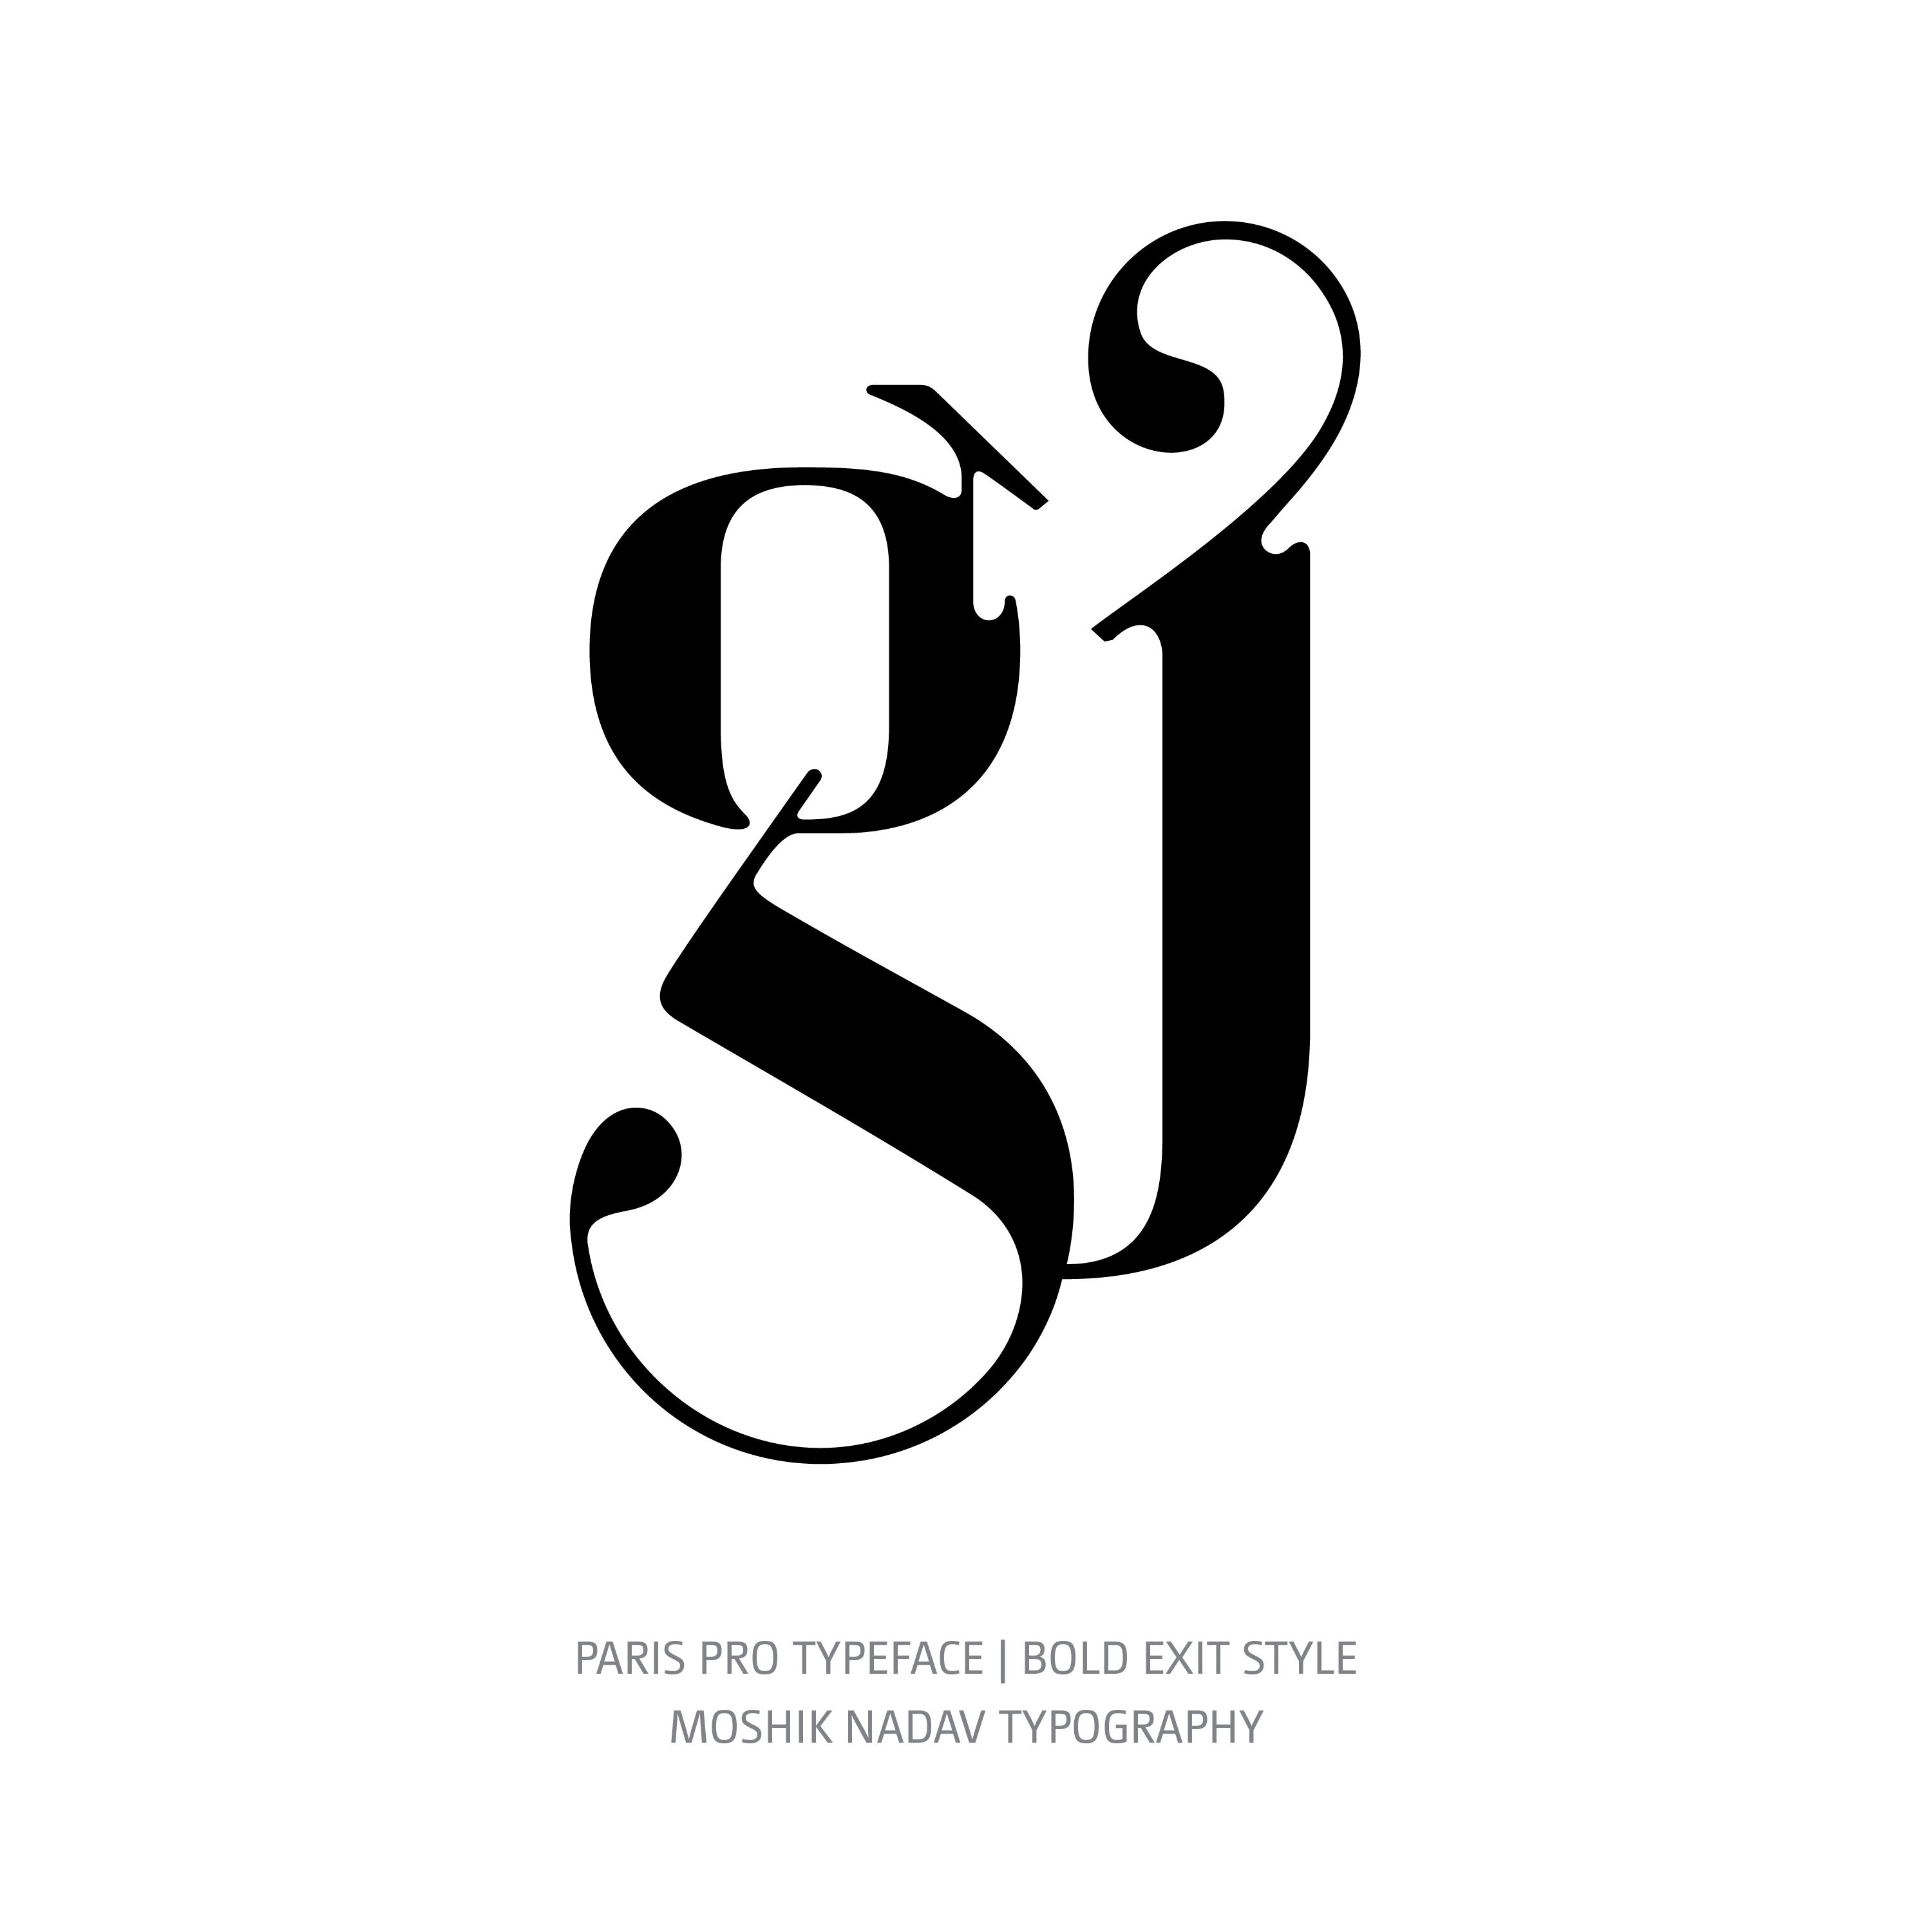 Paris Pro Typeface Bold Exit gj ligature